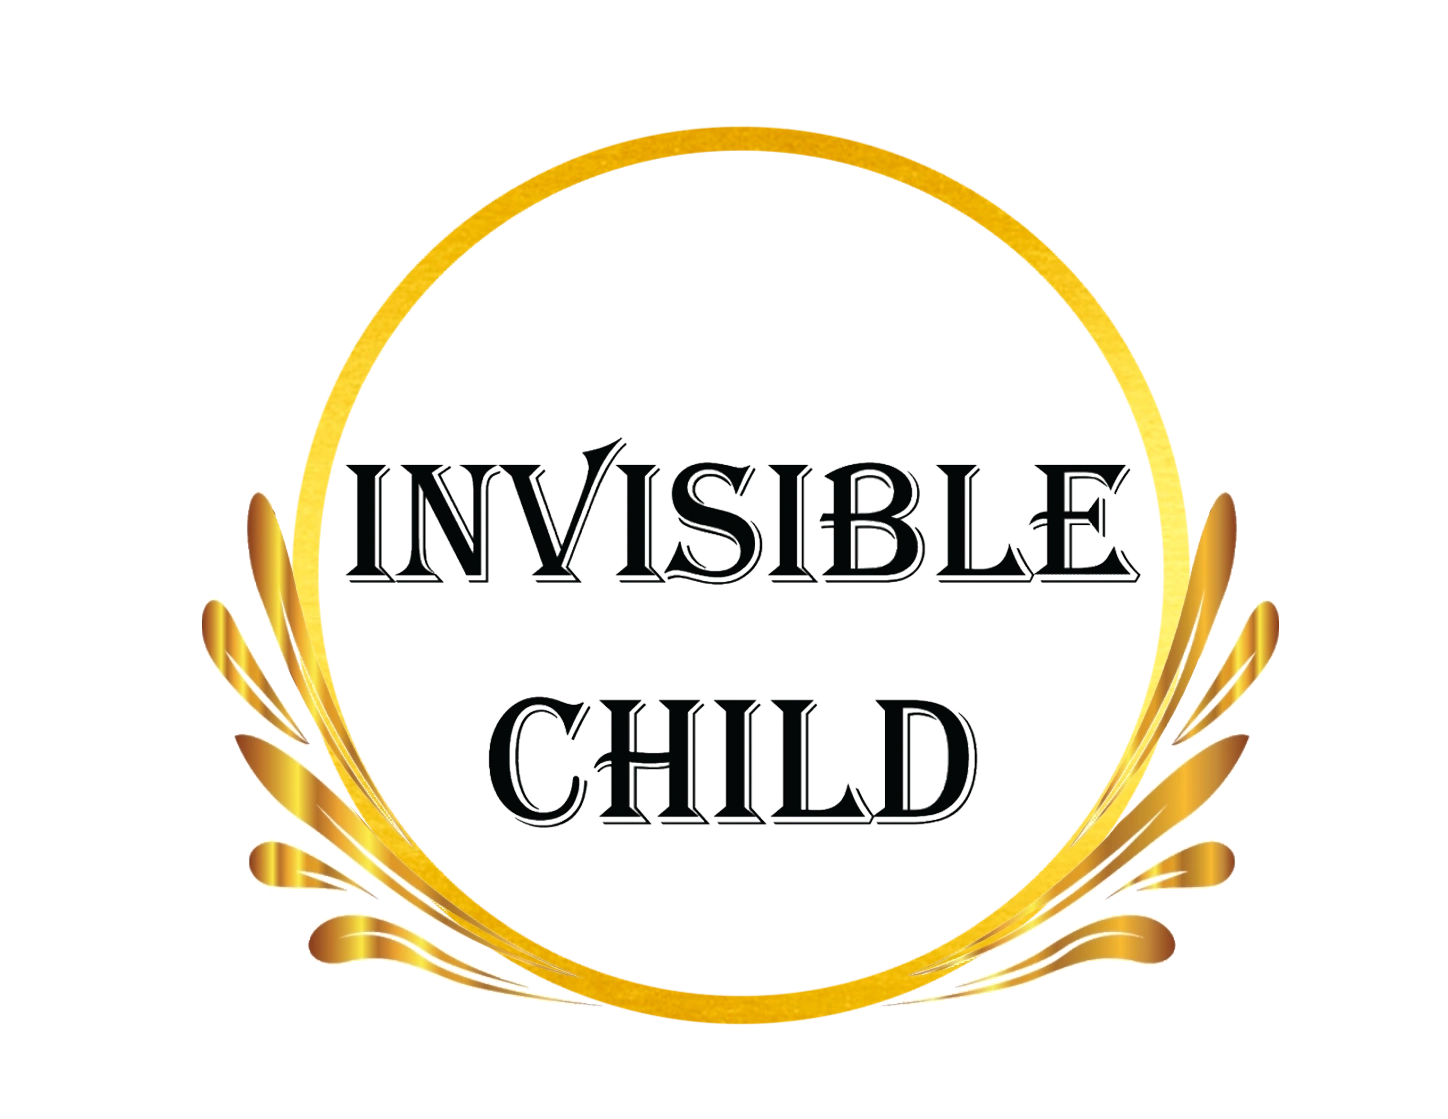 invisible children